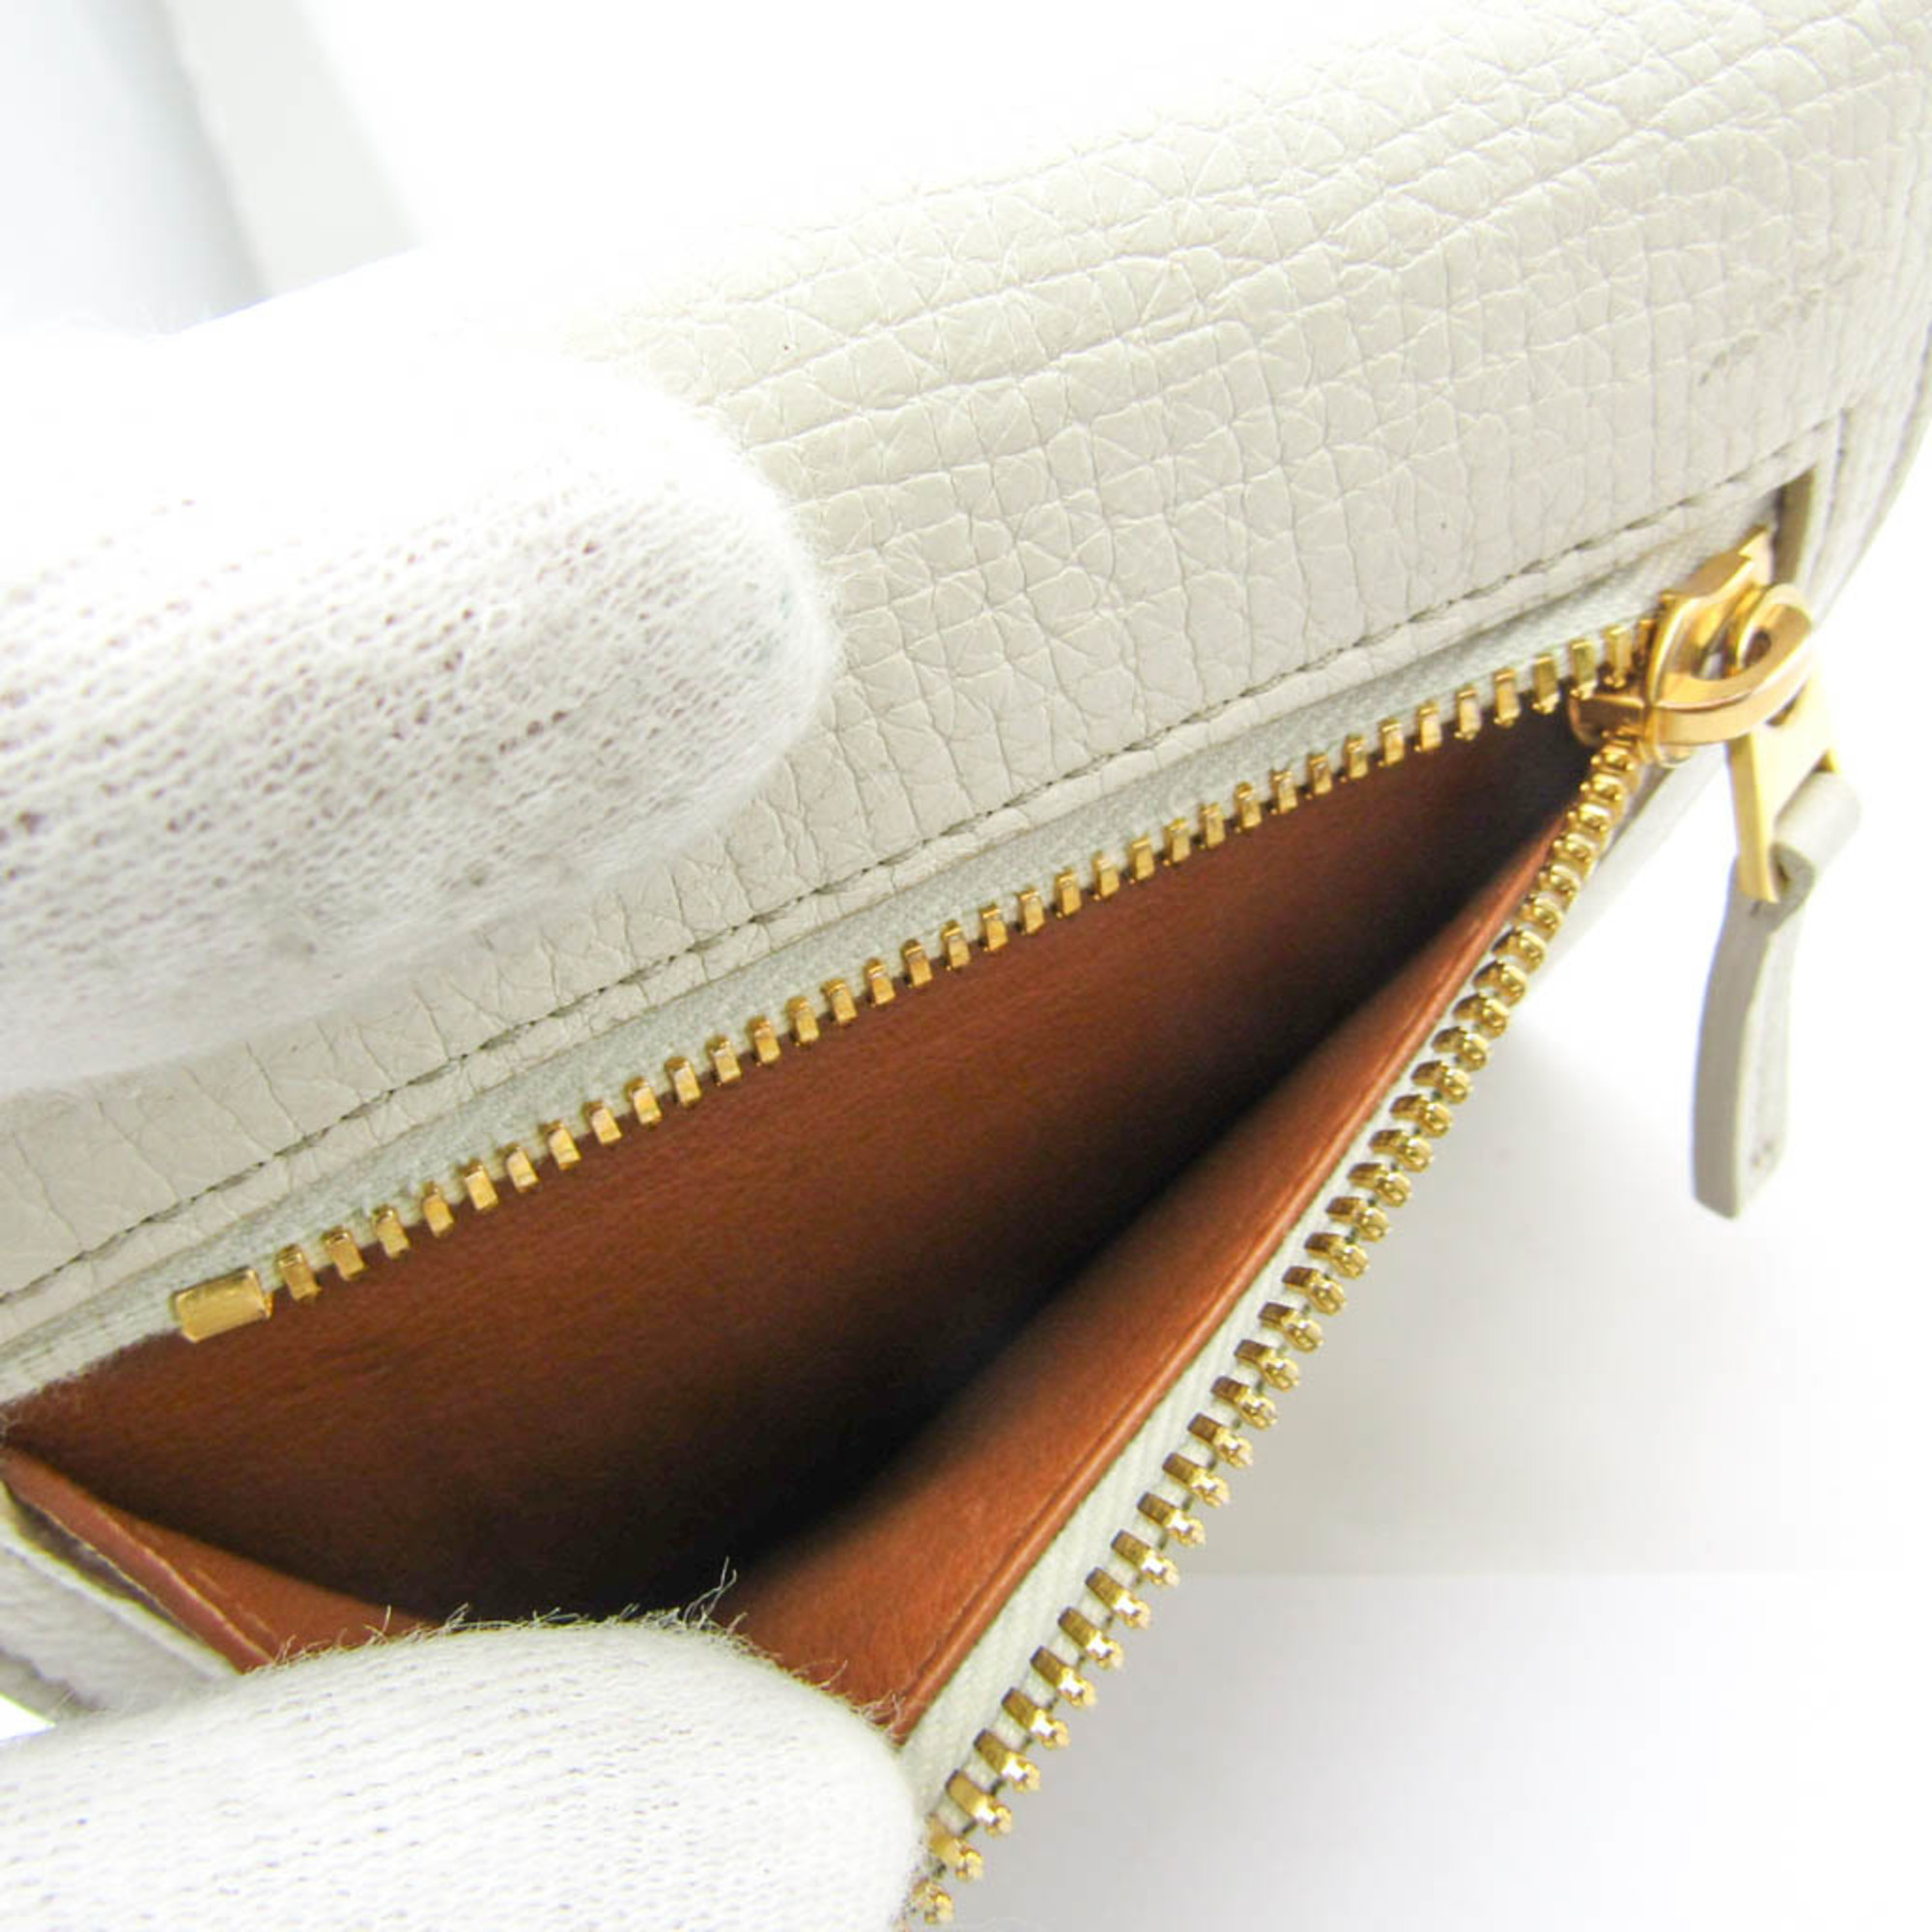 Bottega Veneta Palmerato 576637 Women's Leather Wallet (tri-fold) Off-white